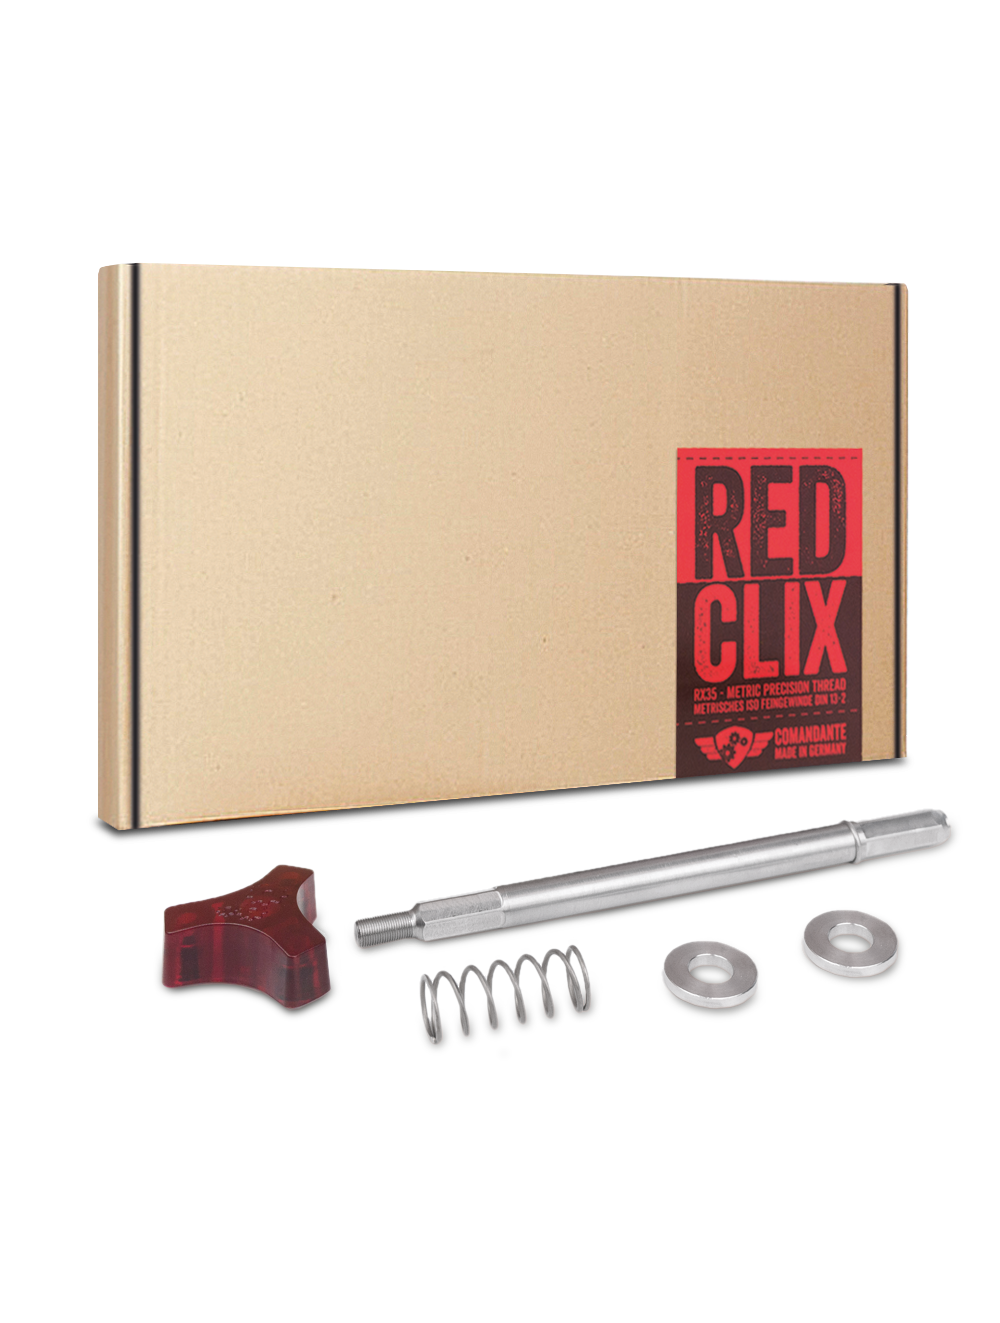 Comandante, Red Clix, accesorio para molino